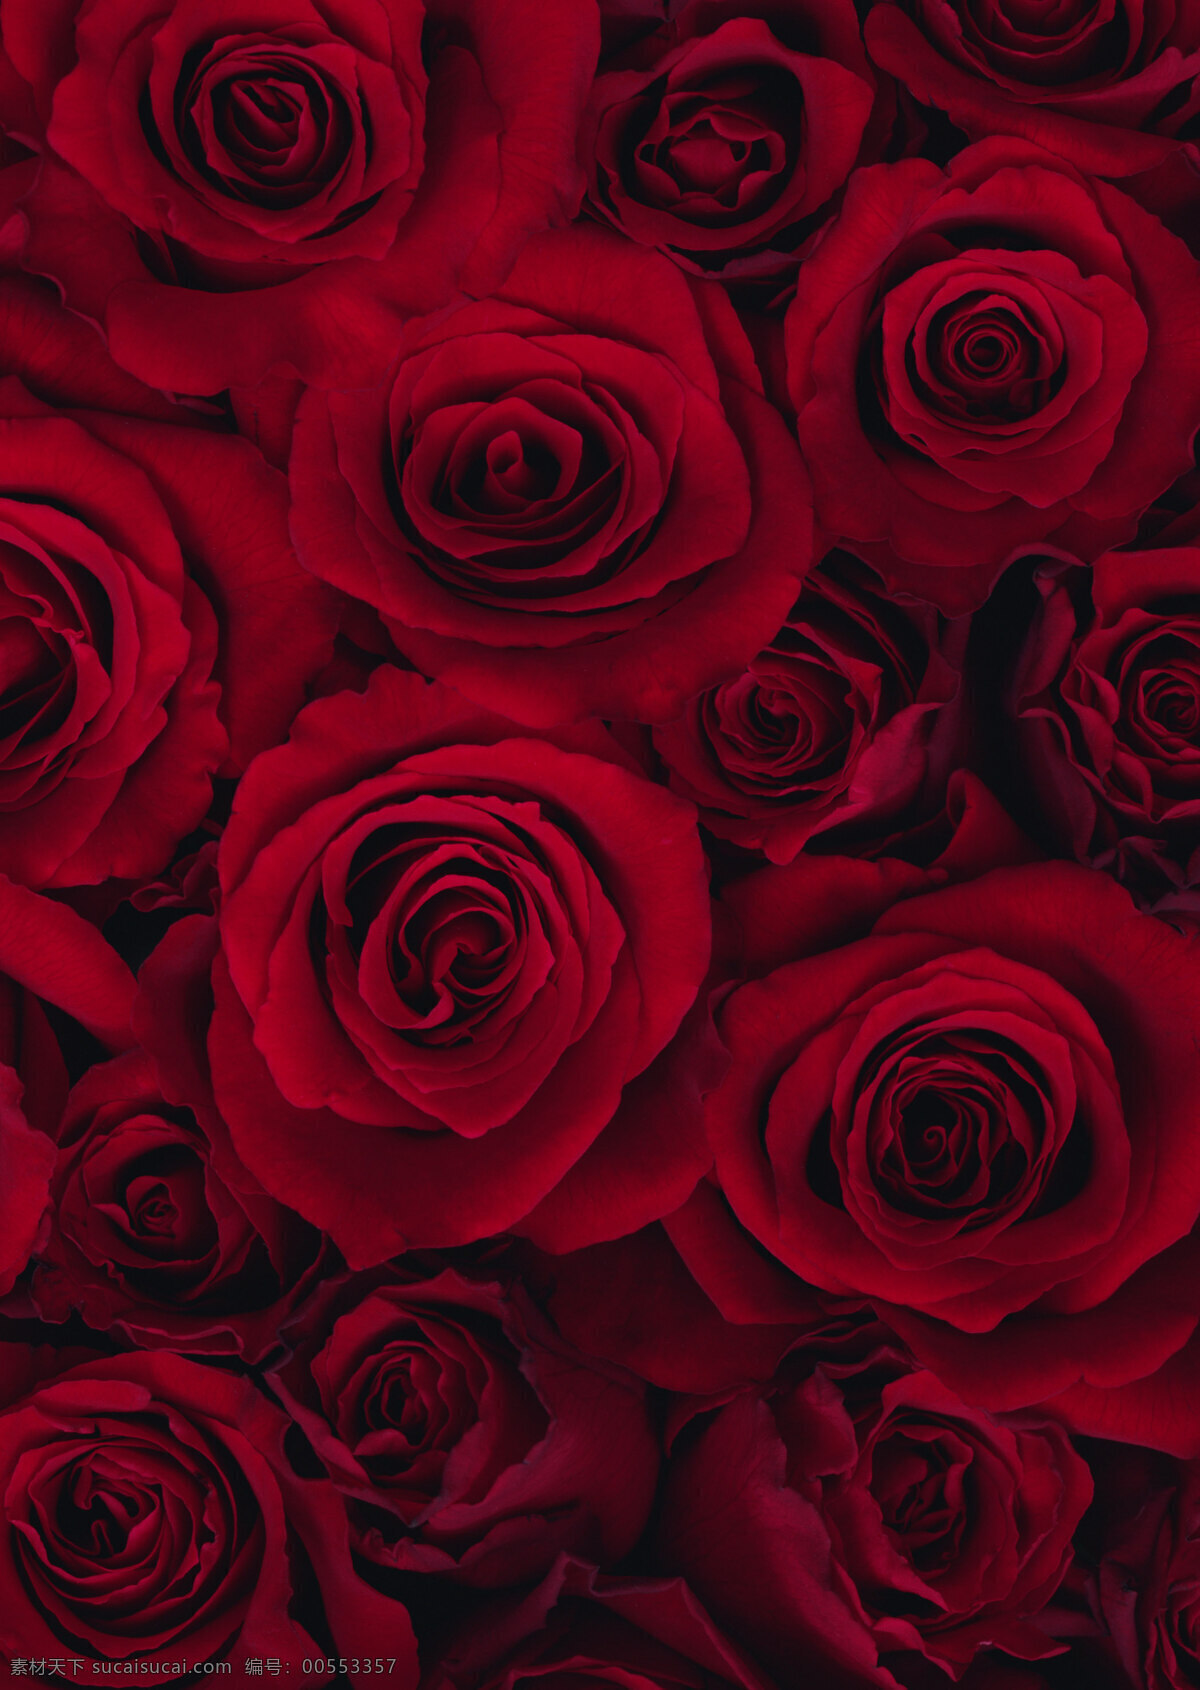 红色玫瑰背景 鲜花 花卉 花朵 背景 红色 浪漫 玫瑰 玫瑰花 花草 生物世界